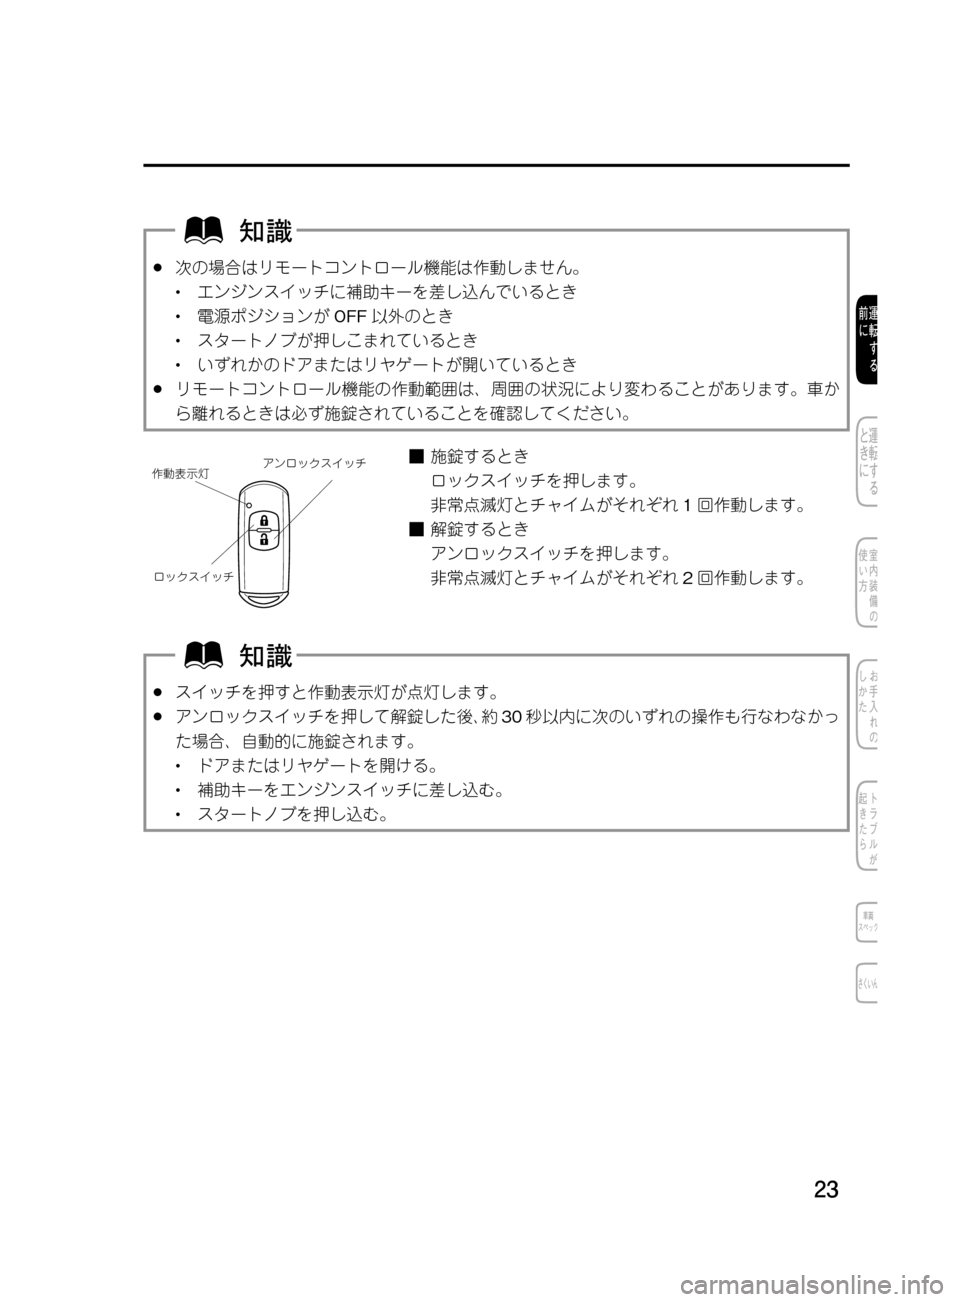 MAZDA MODEL DEMIO 2011  デミオ｜取扱説明書 (in Japanese) ��
��P�S�N��/�P���% 